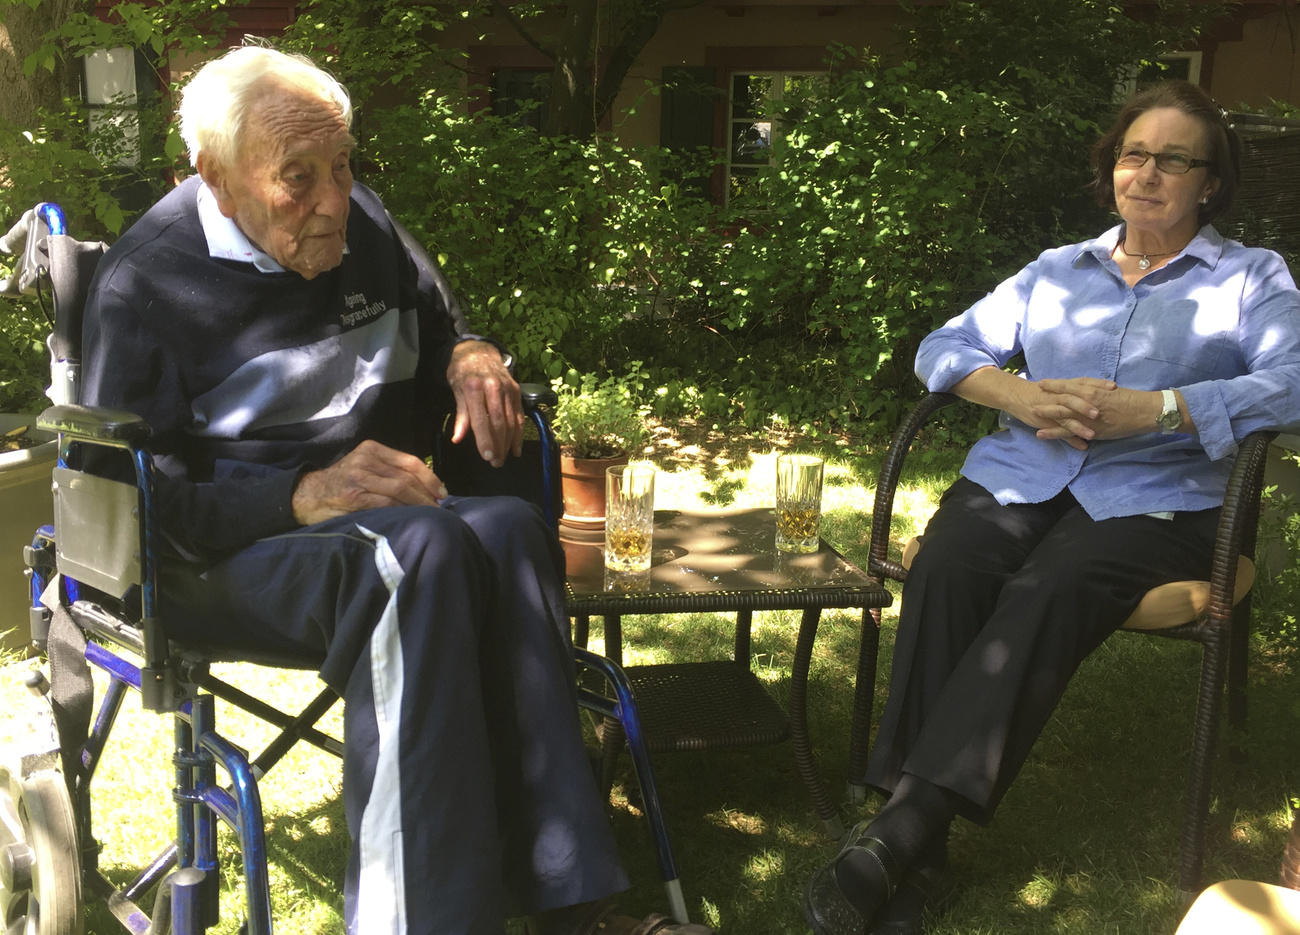 David Goodall con una enfermera. Ambos están sentados en un jardín.